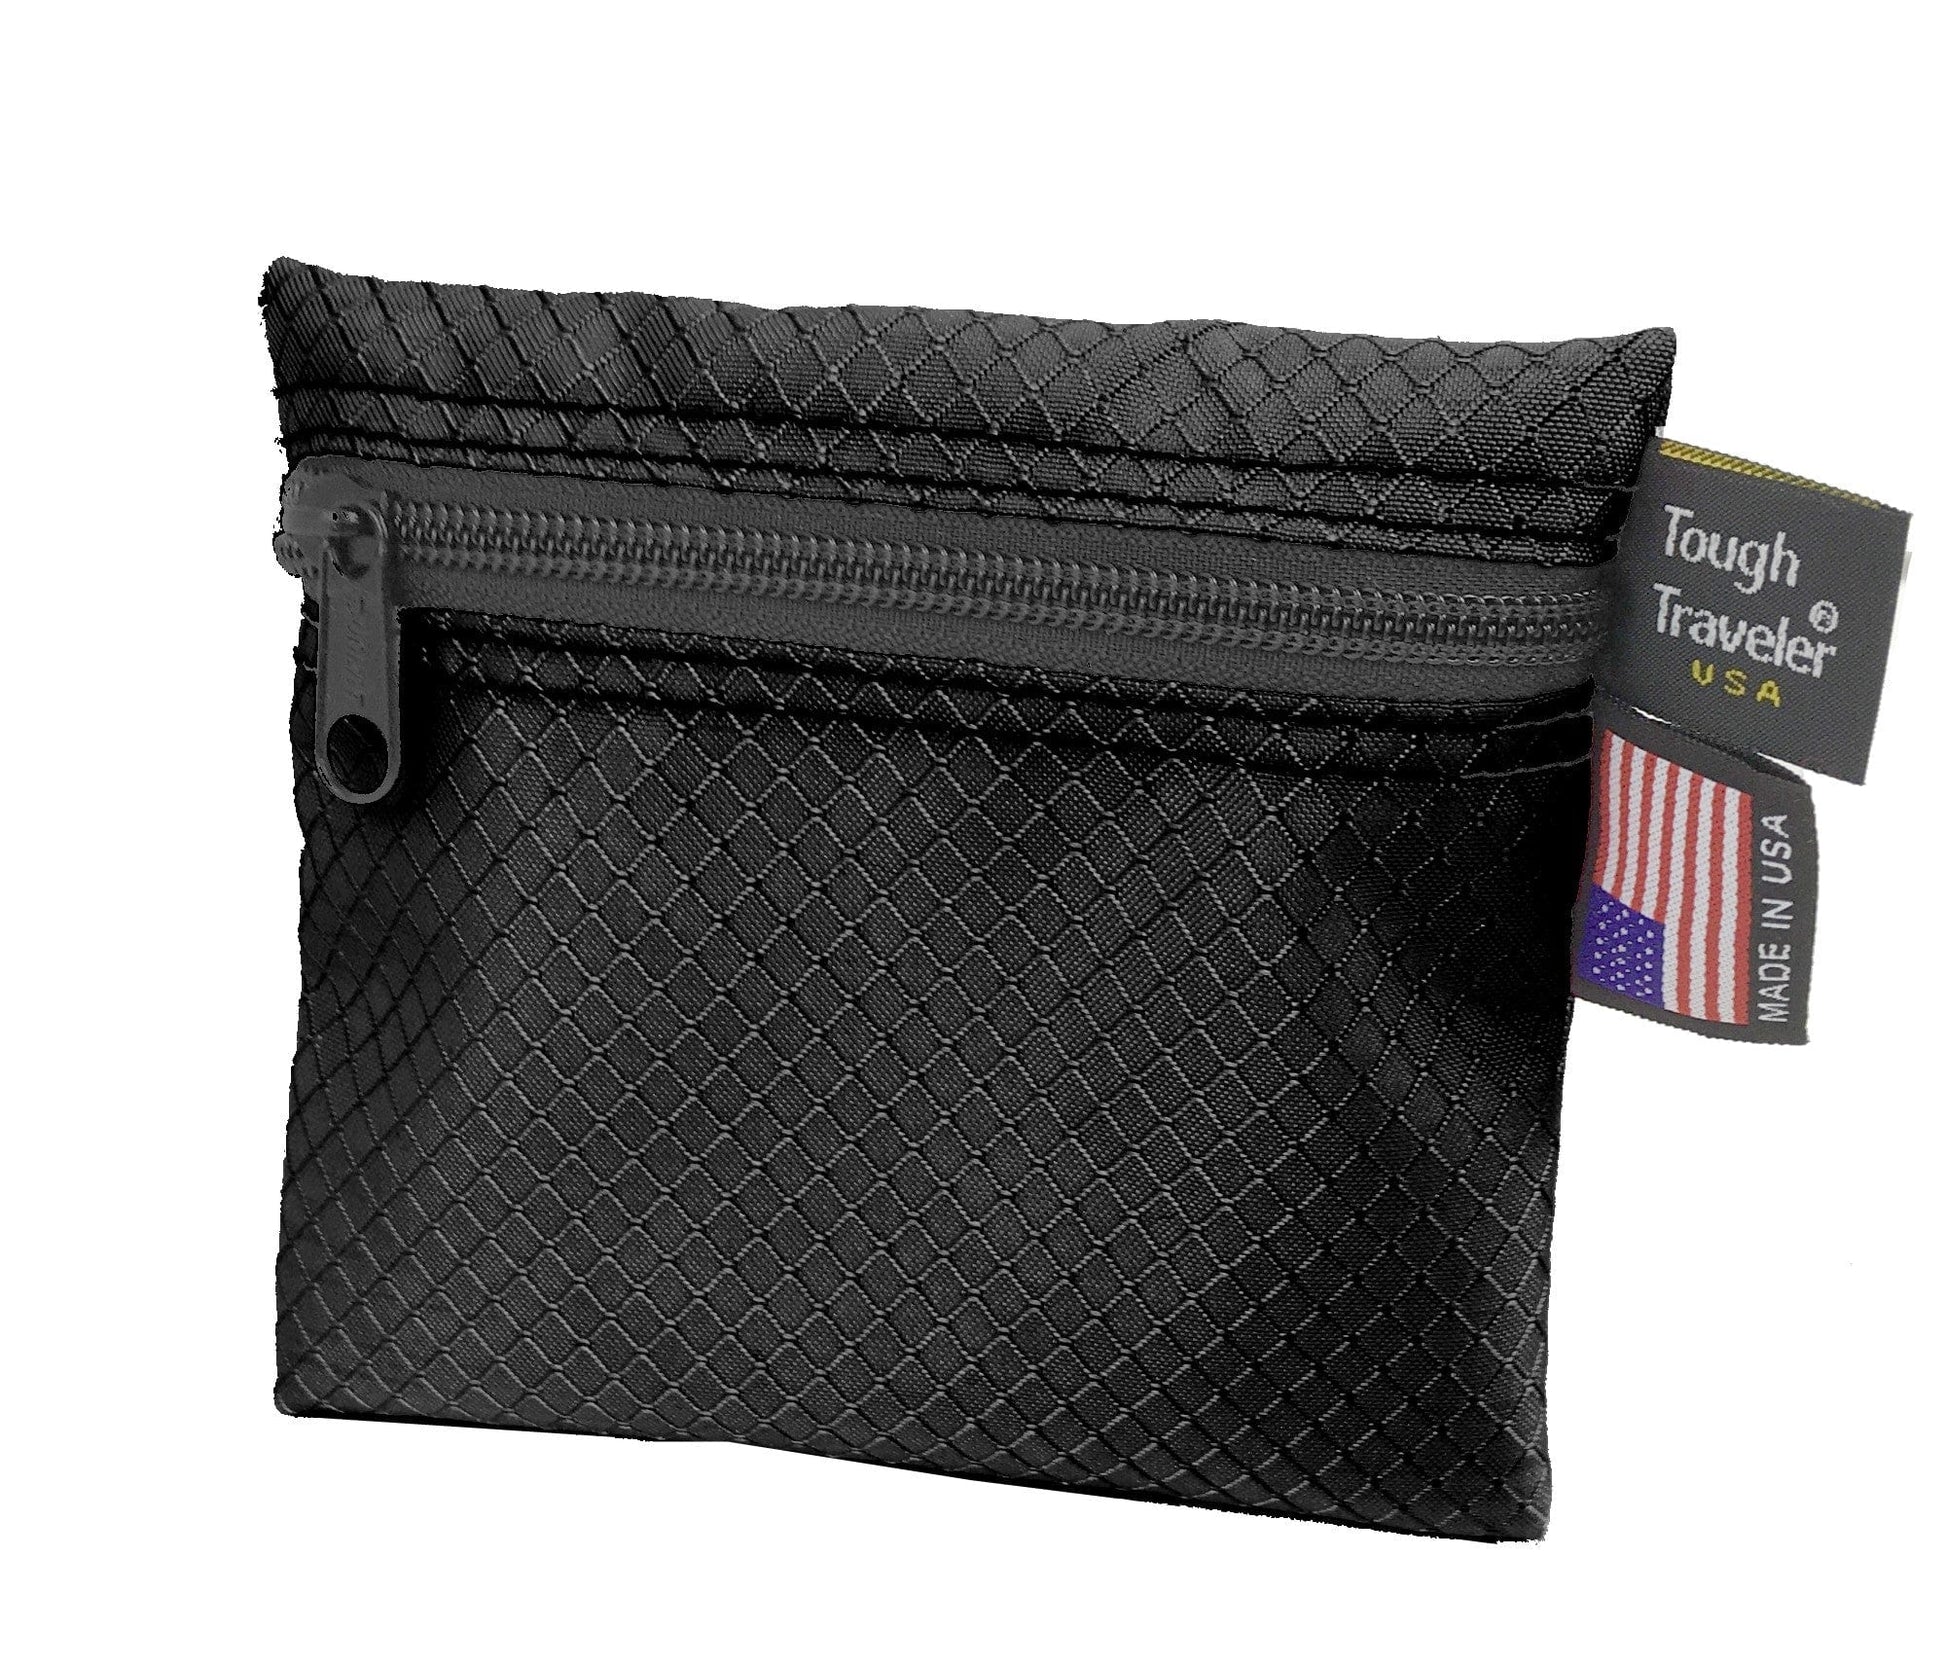 GUESS Logo Leather Multi Pocket Wallet For Men - Black